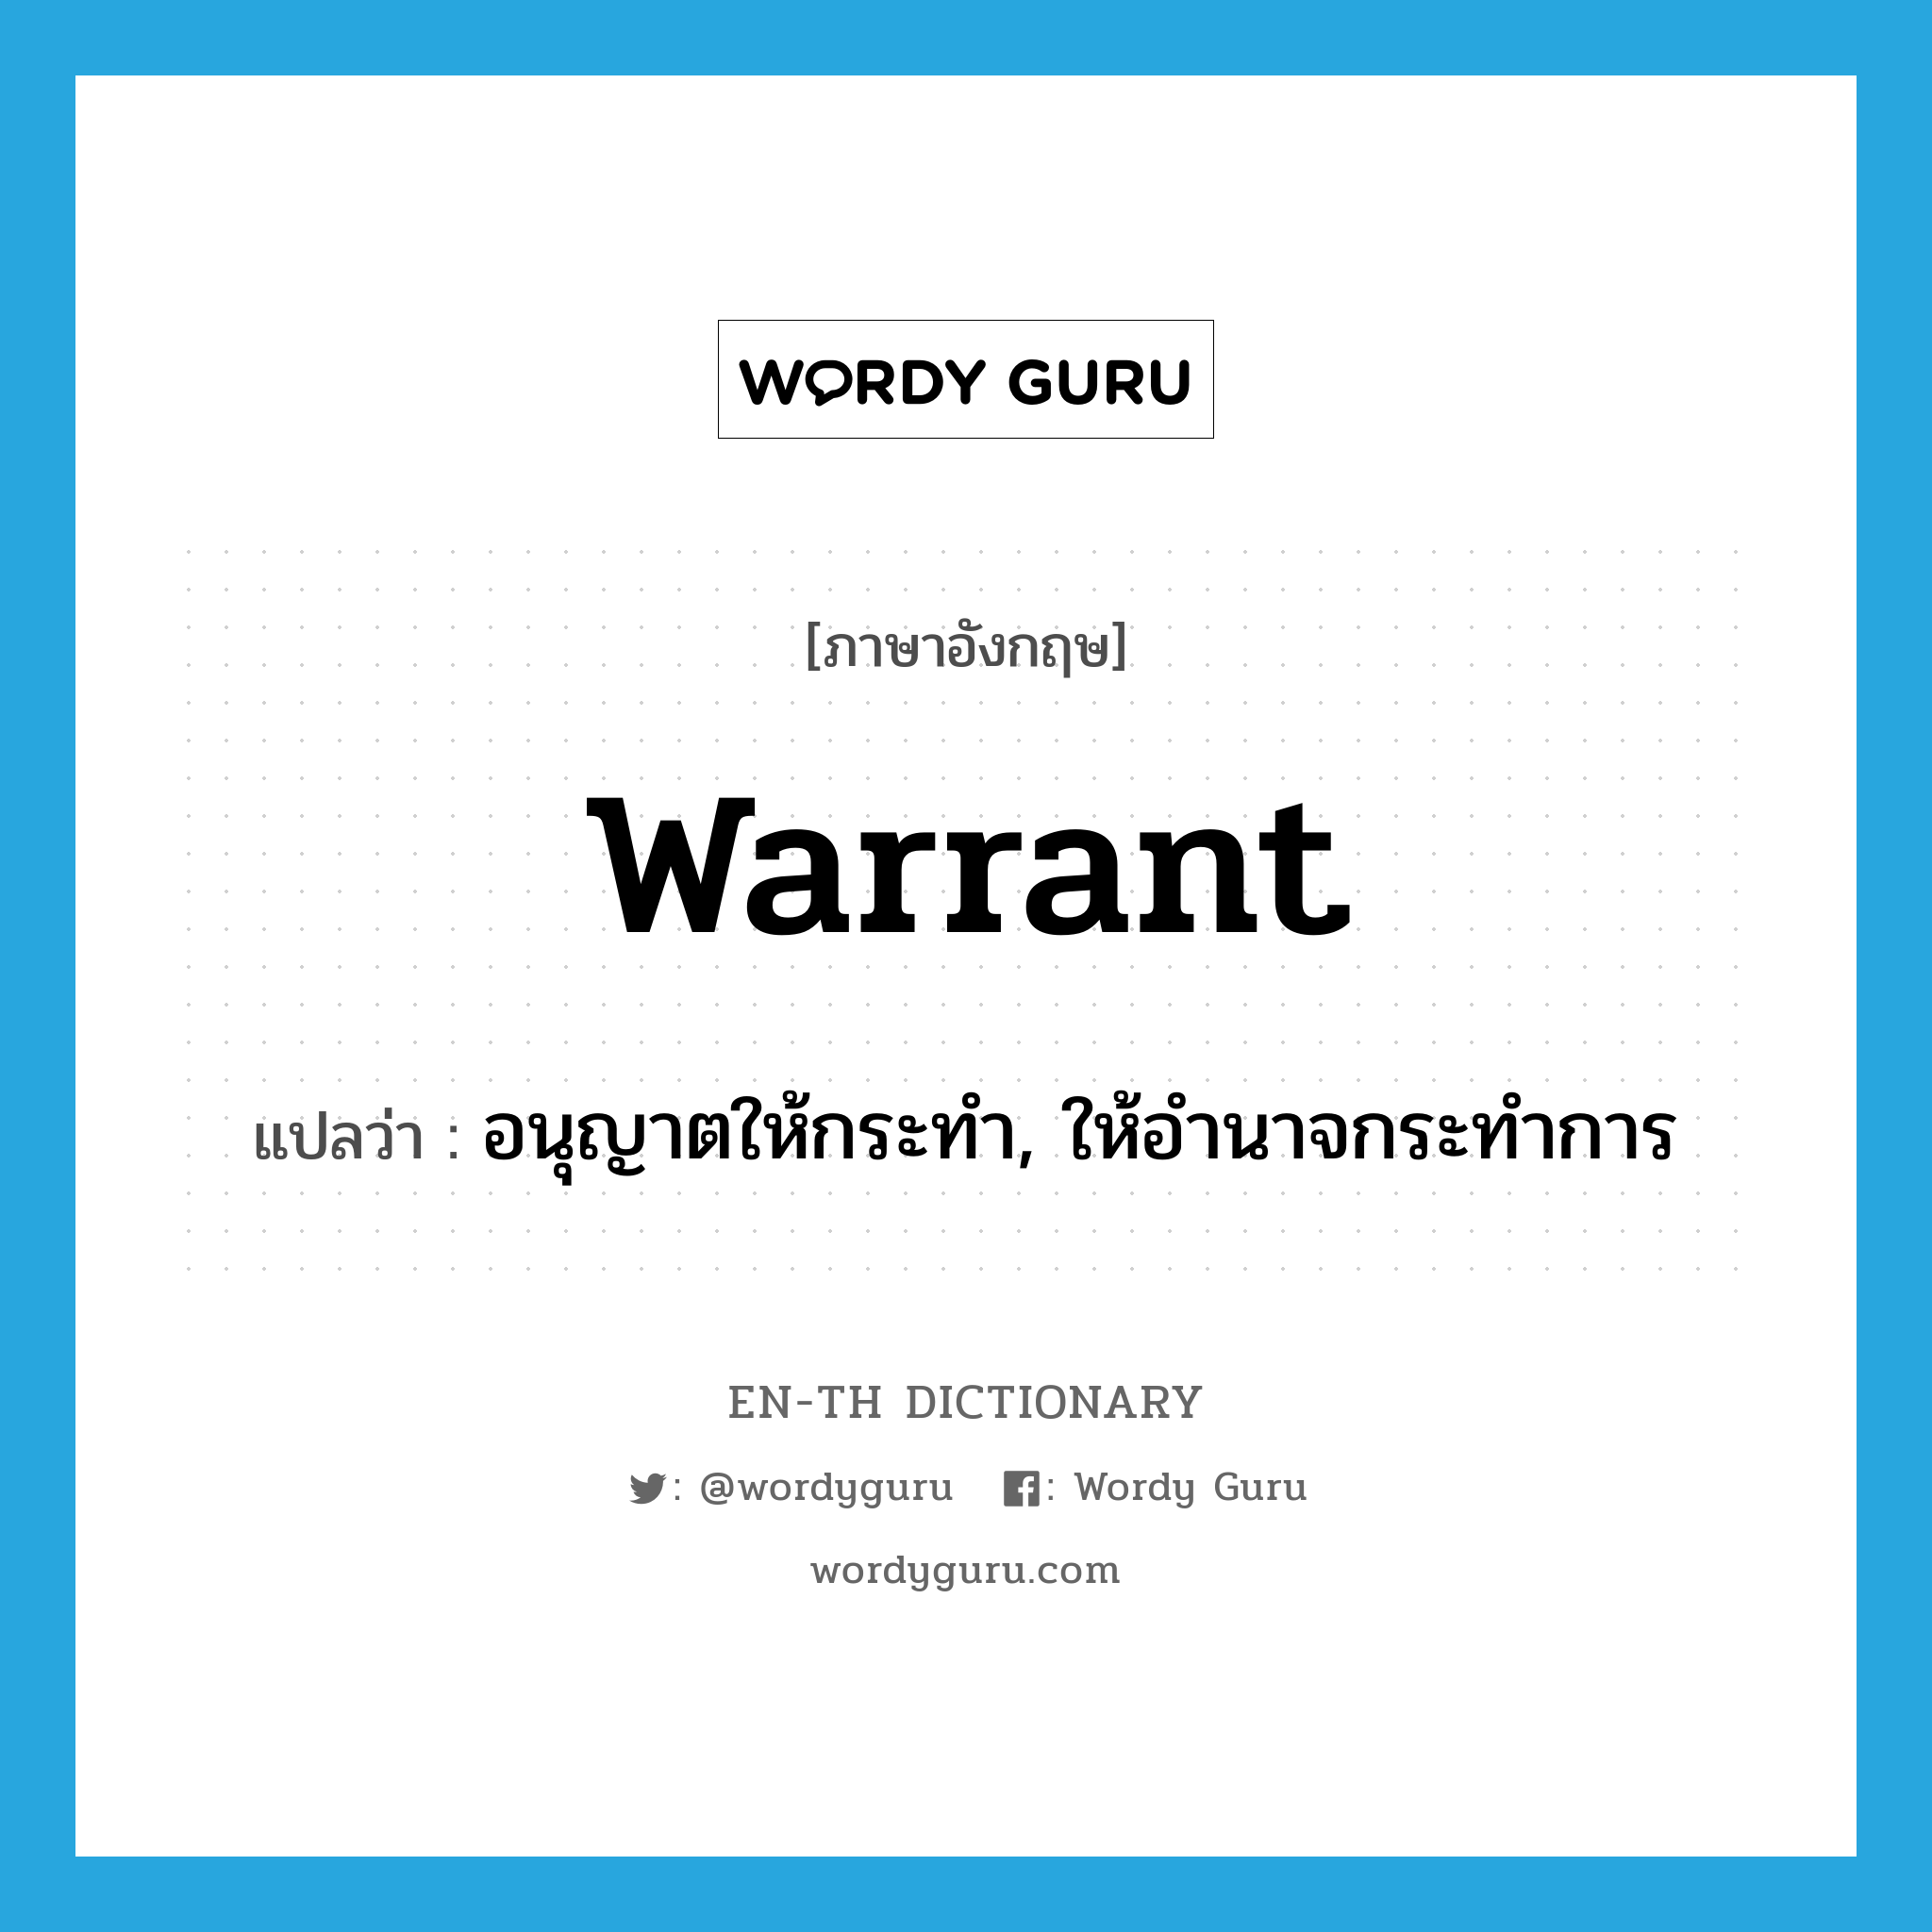 warrant แปลว่า?, คำศัพท์ภาษาอังกฤษ warrant แปลว่า อนุญาตให้กระทำ, ให้อำนาจกระทำการ ประเภท VT หมวด VT